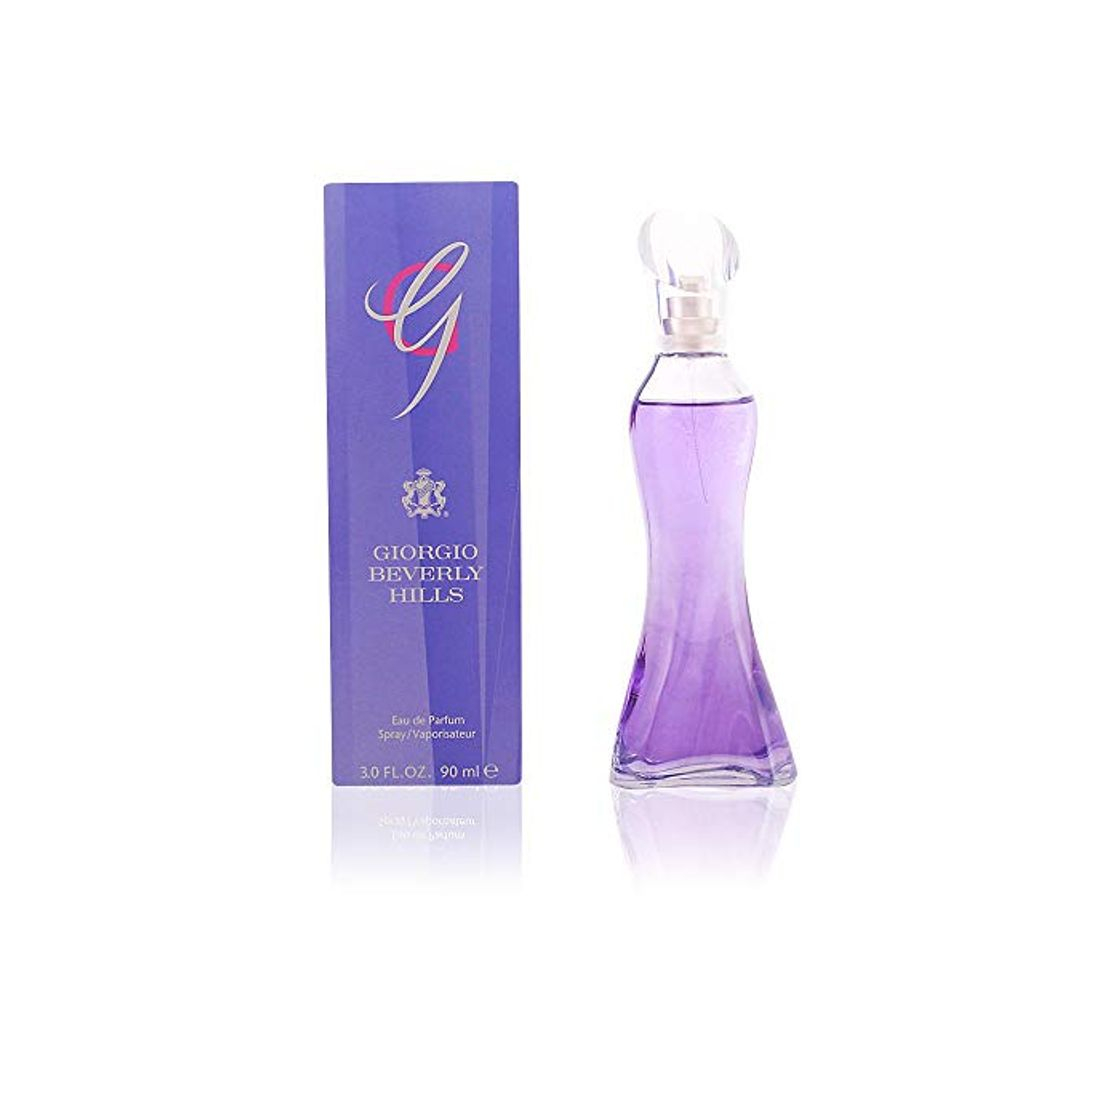 Giorgio Beverly Hills G Agua de Perfume